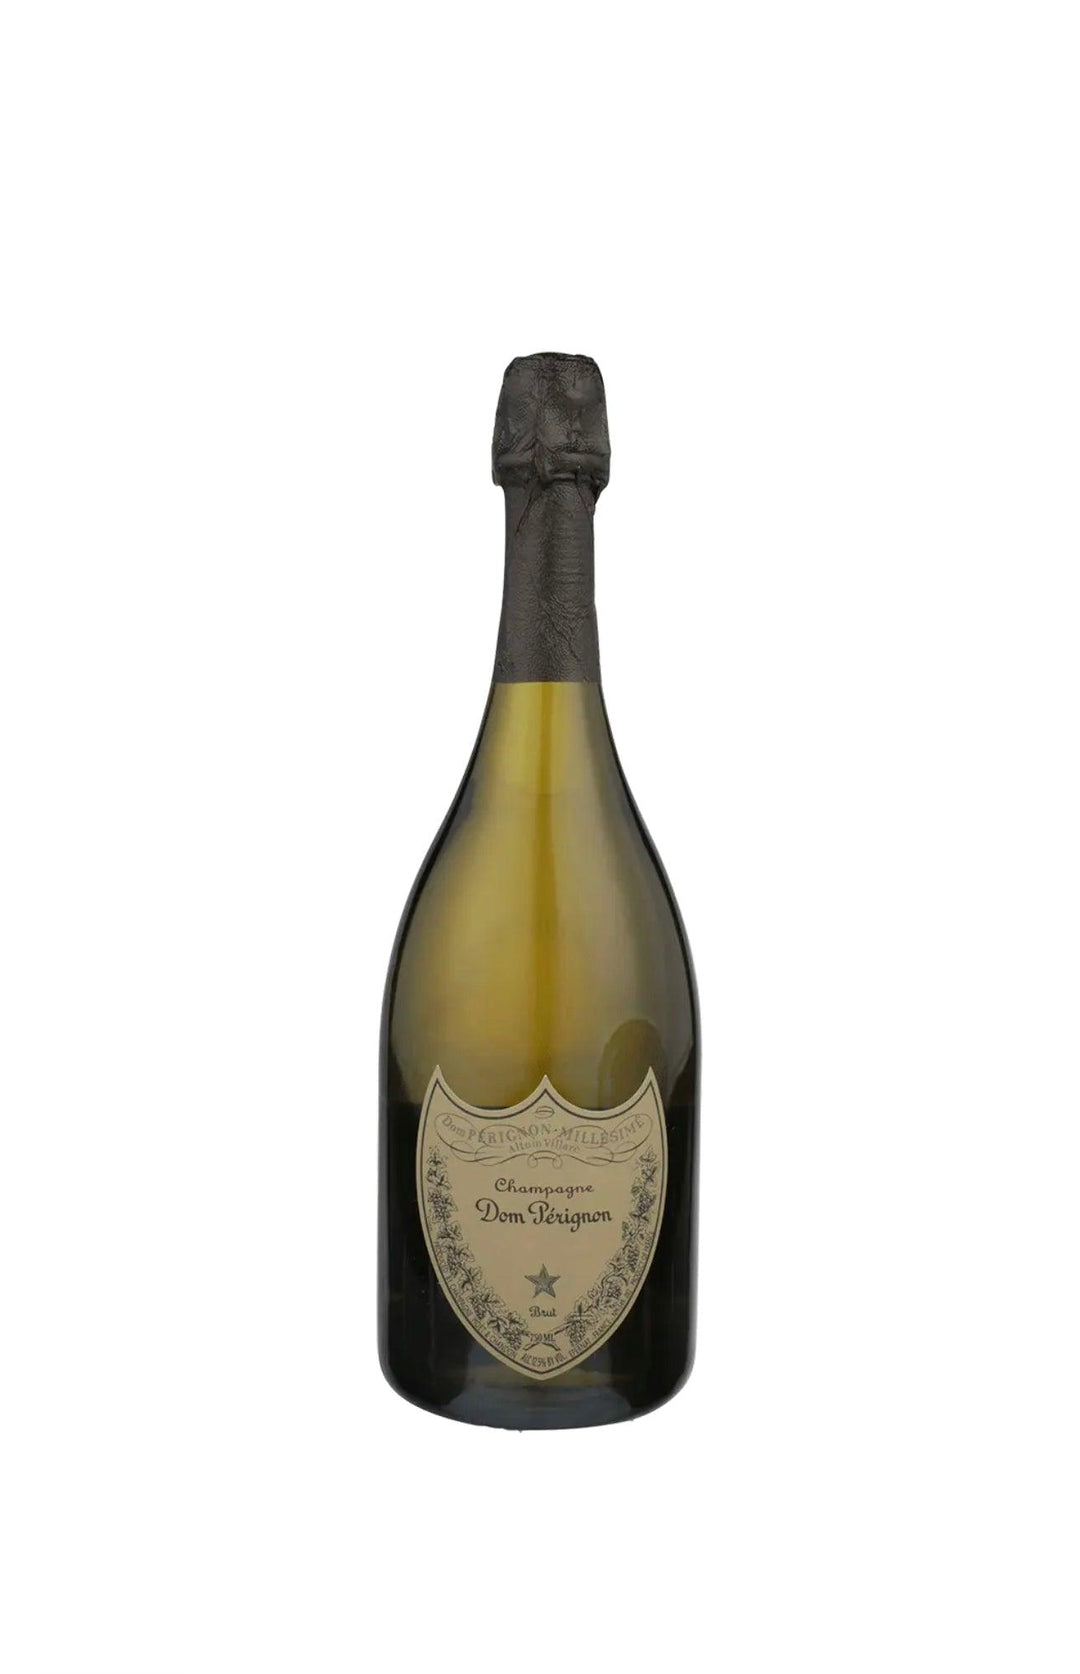 Don Perignon Brut Champagne - Liquor Luxe